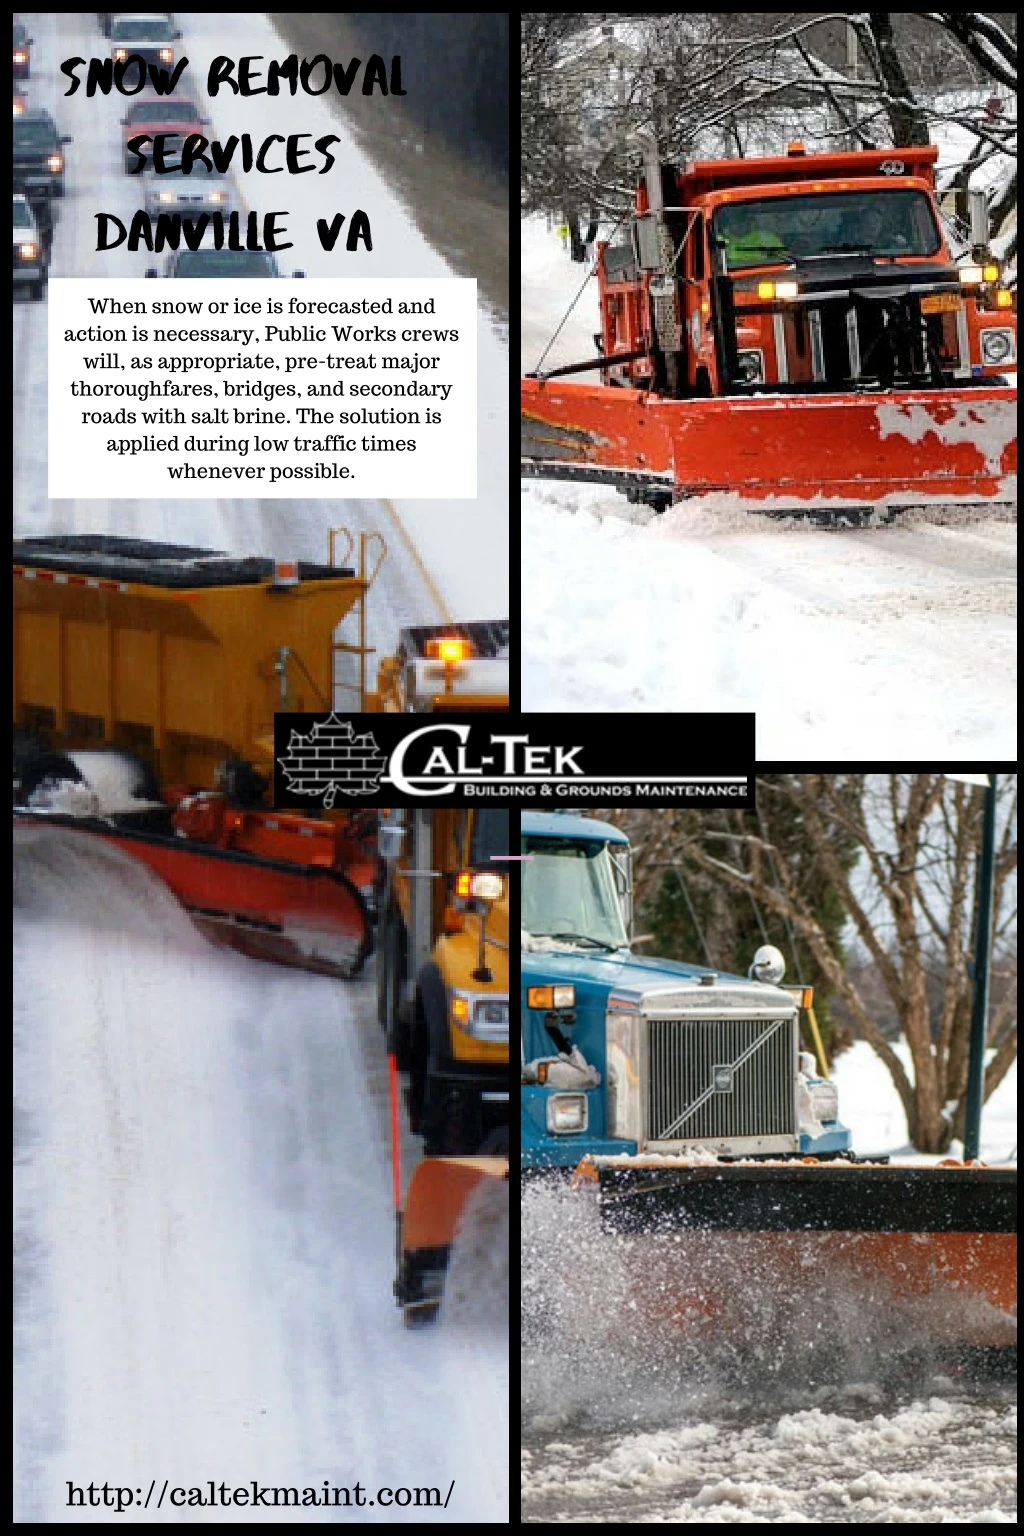 snow removal services danville va